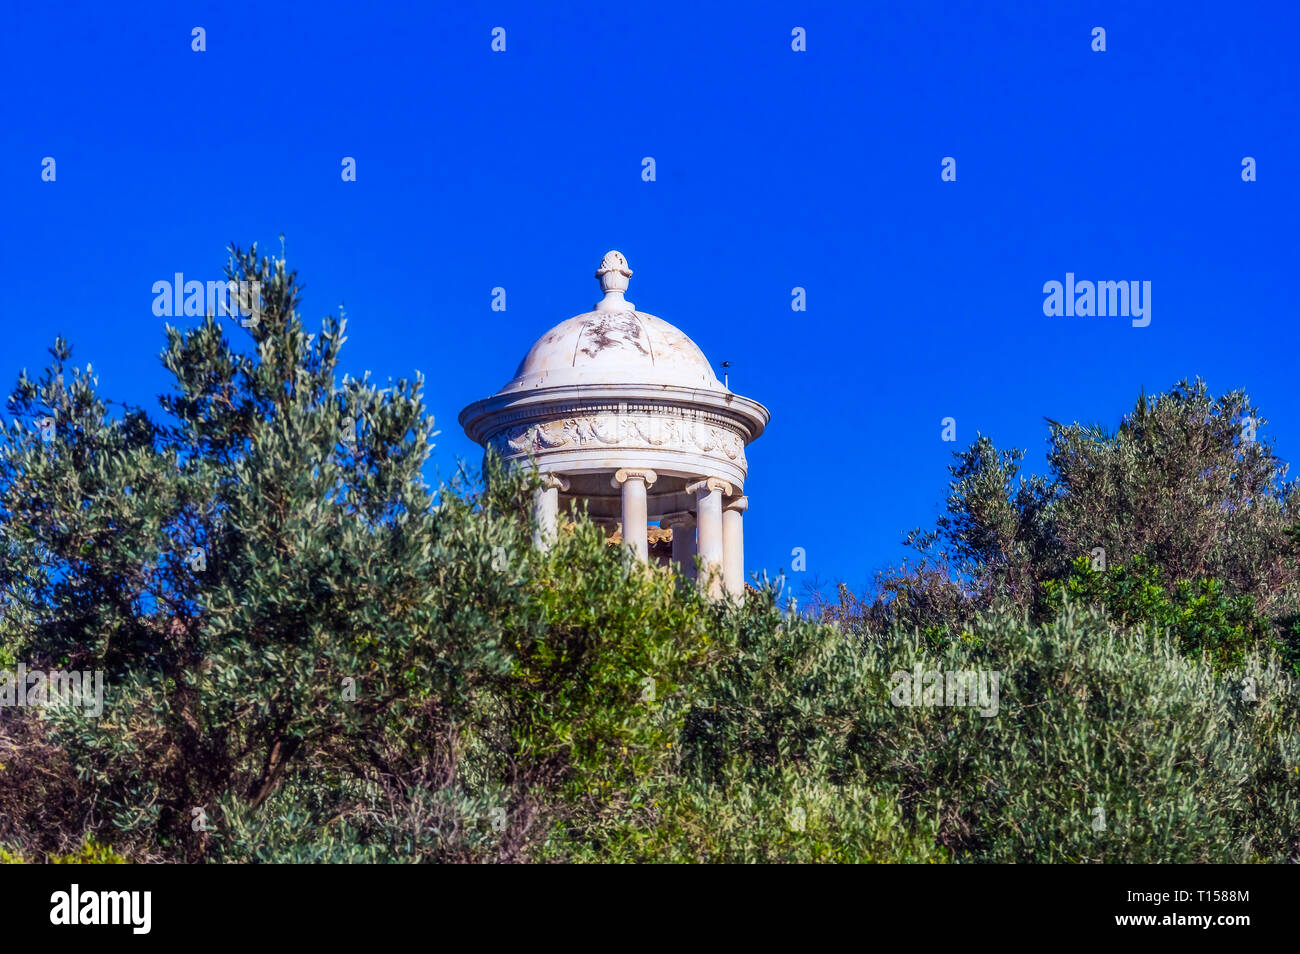 Spagna, Mallorca, figlio Maroig, cassisist tempio in marmo di Carrara Foto Stock